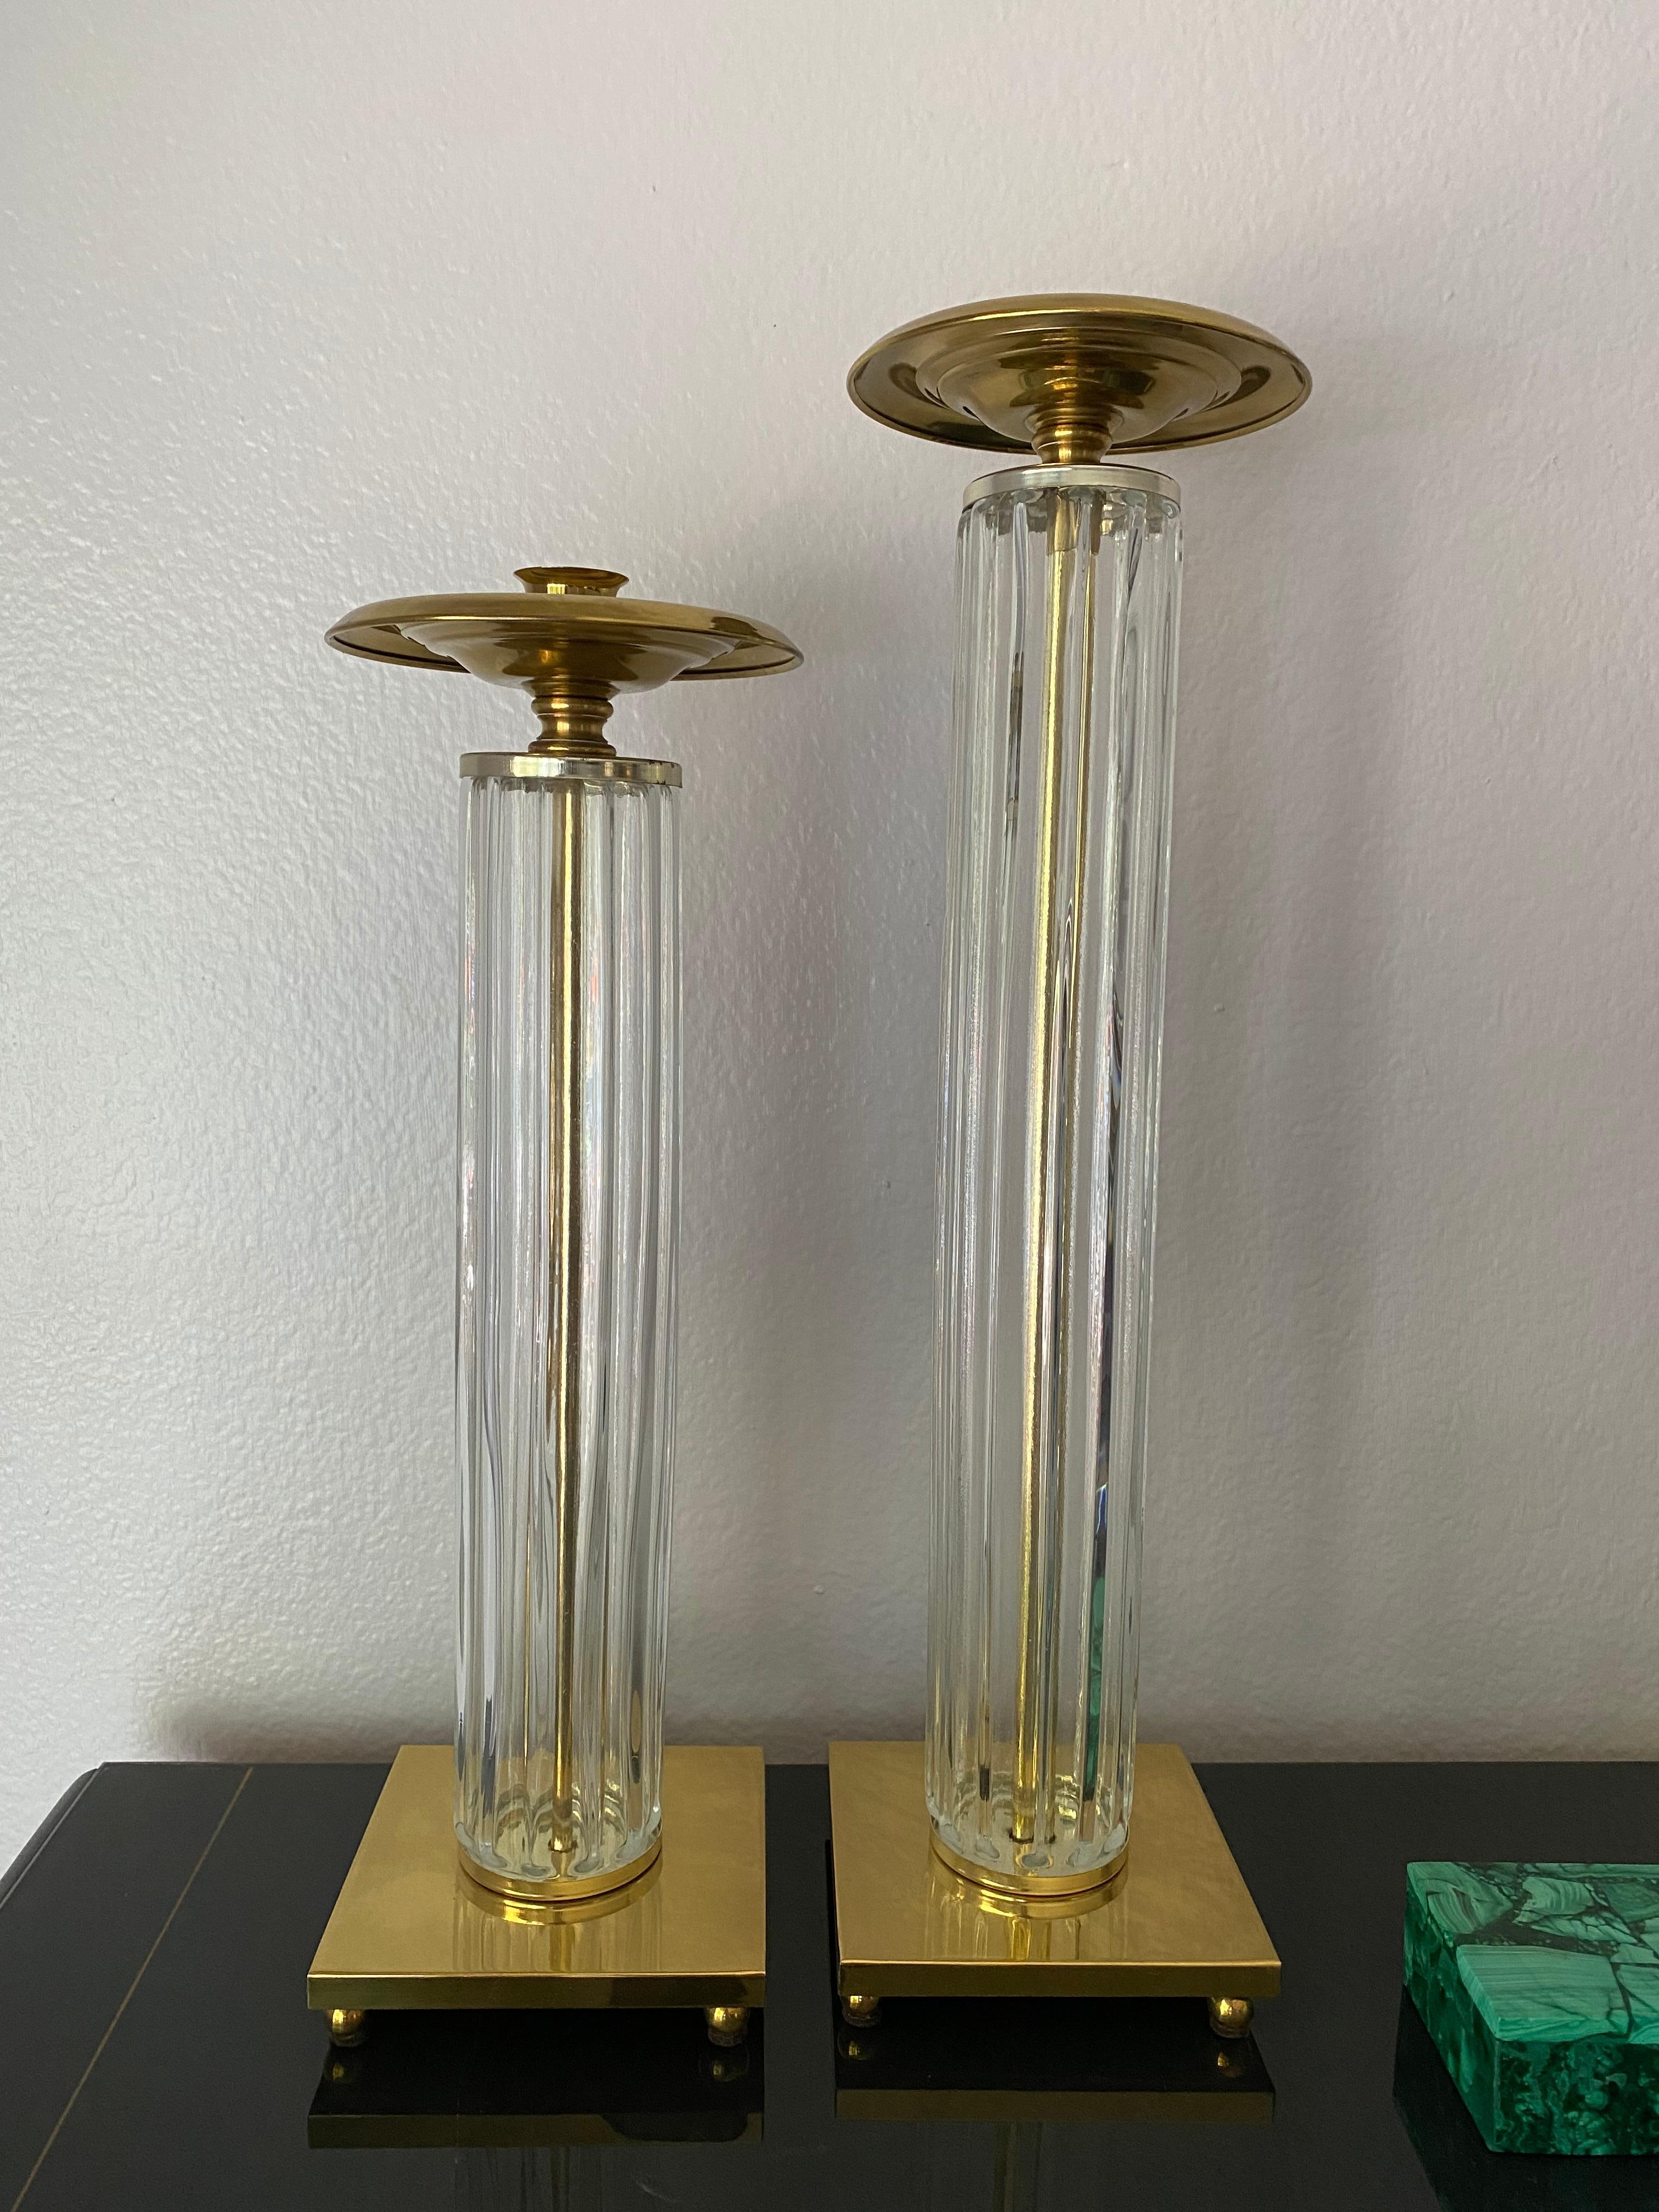 Paire de chandeliers en laiton et verre moulé. L'une mesure 15